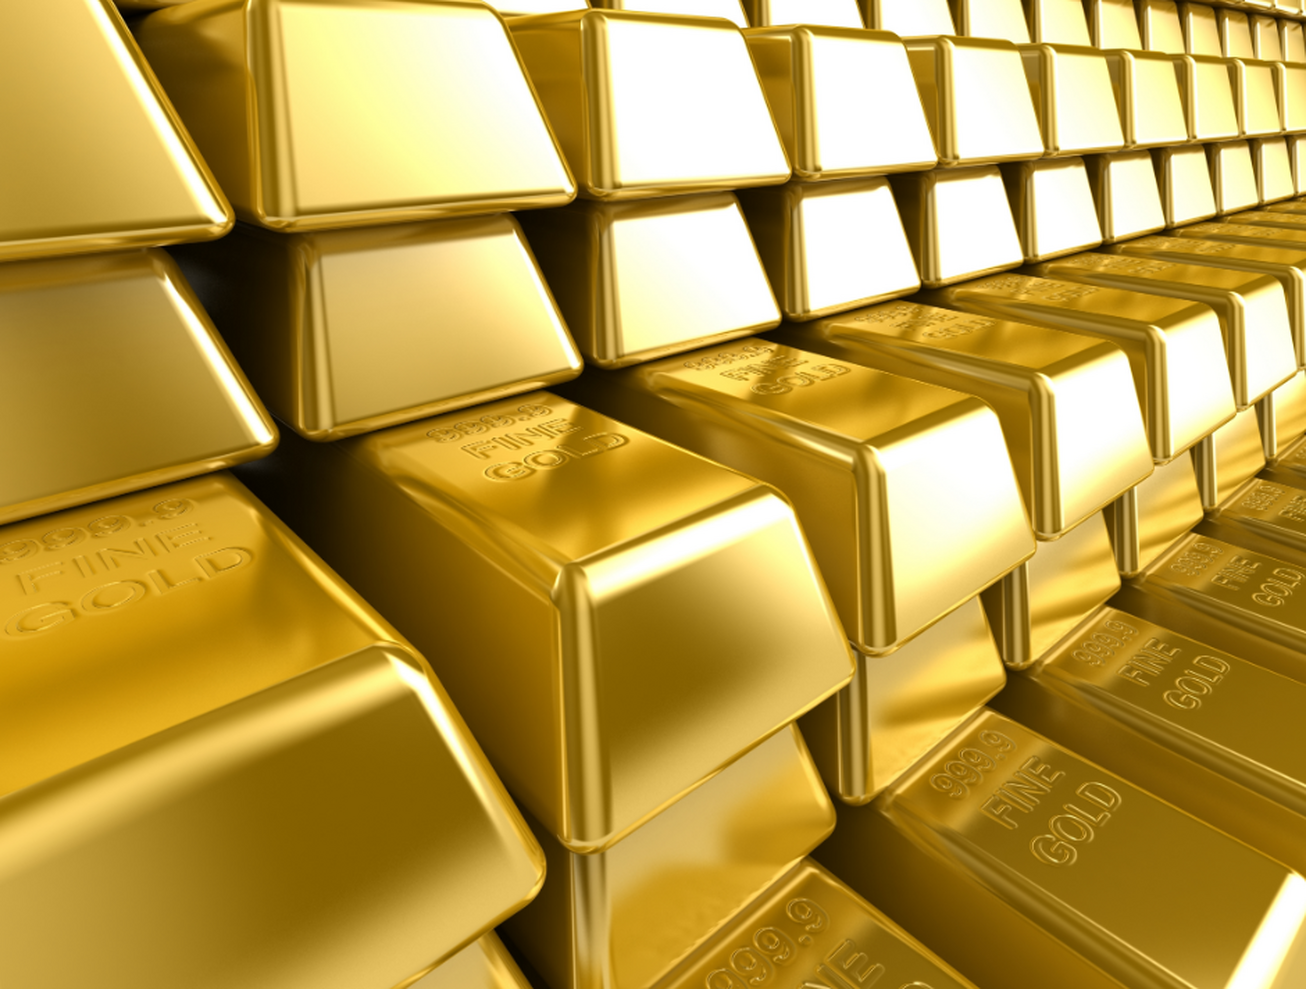 قیمت طلا به بالاترین سطح خود در نزدیک به یک ماه گذشته رسید